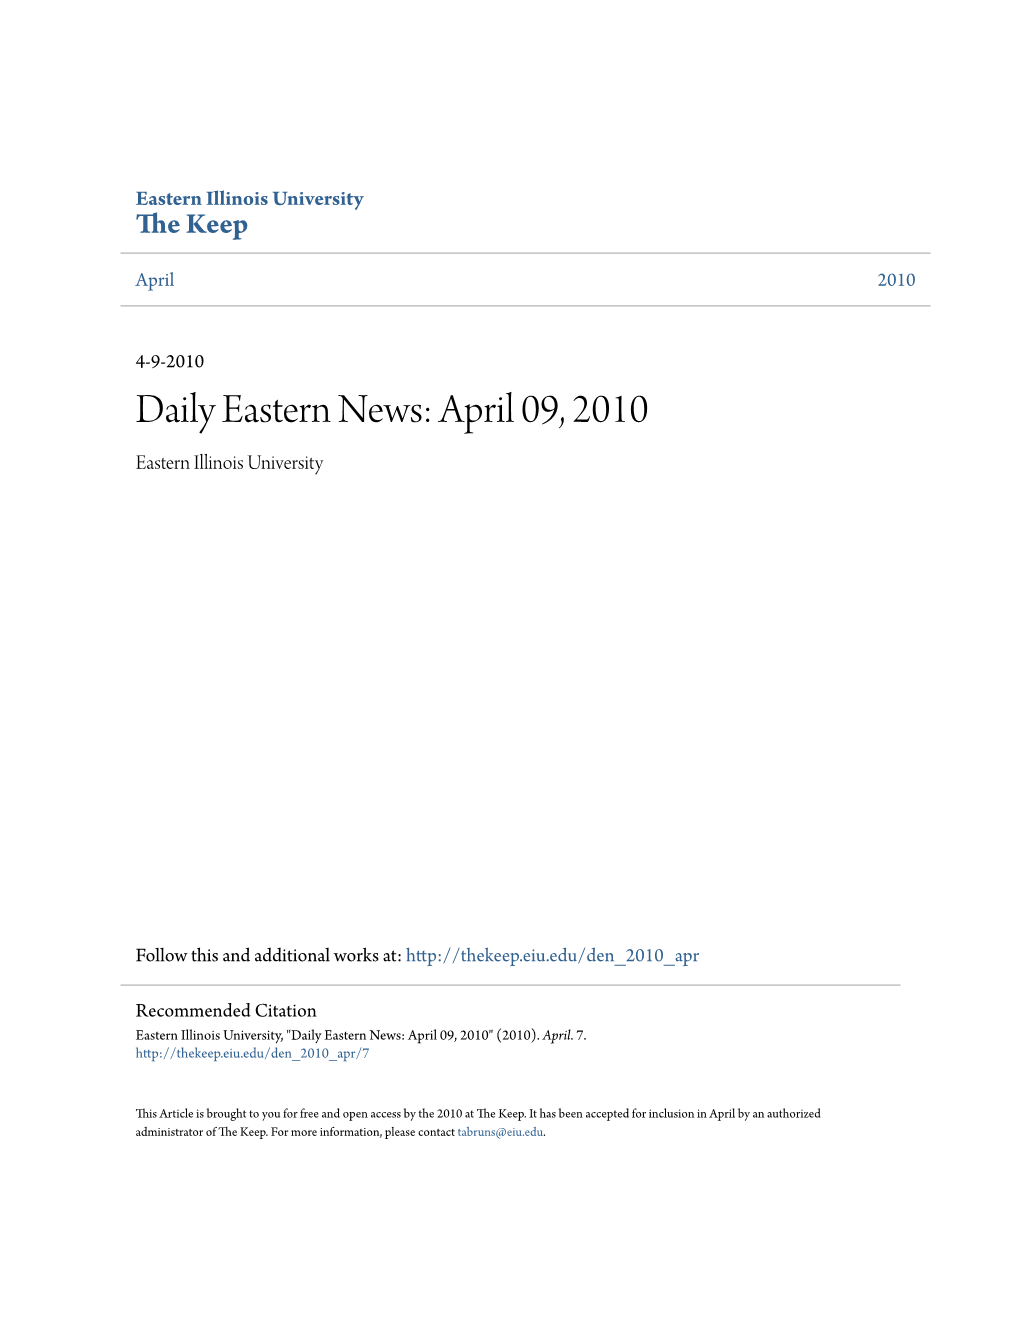 Eastern News: April 09, 2010 Eastern Illinois University